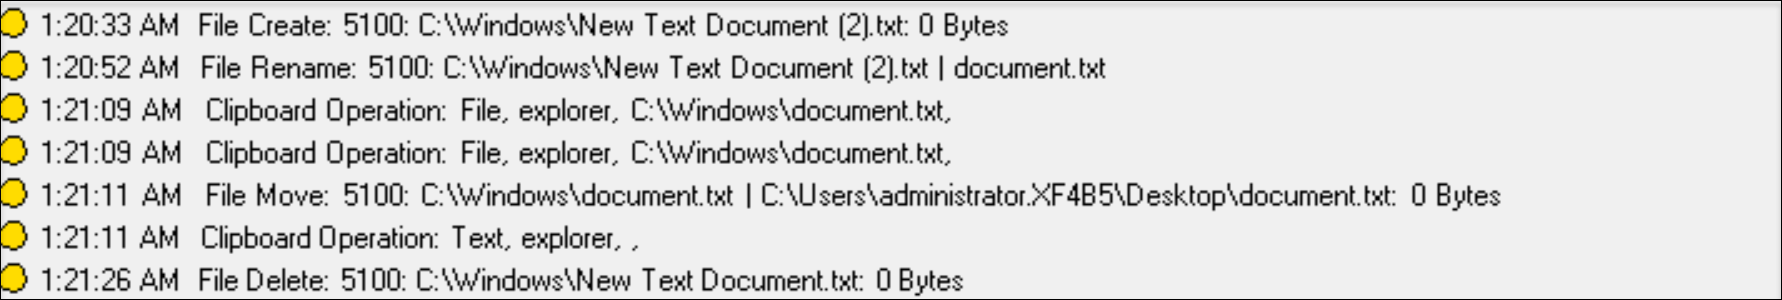 Operaciones de archivos